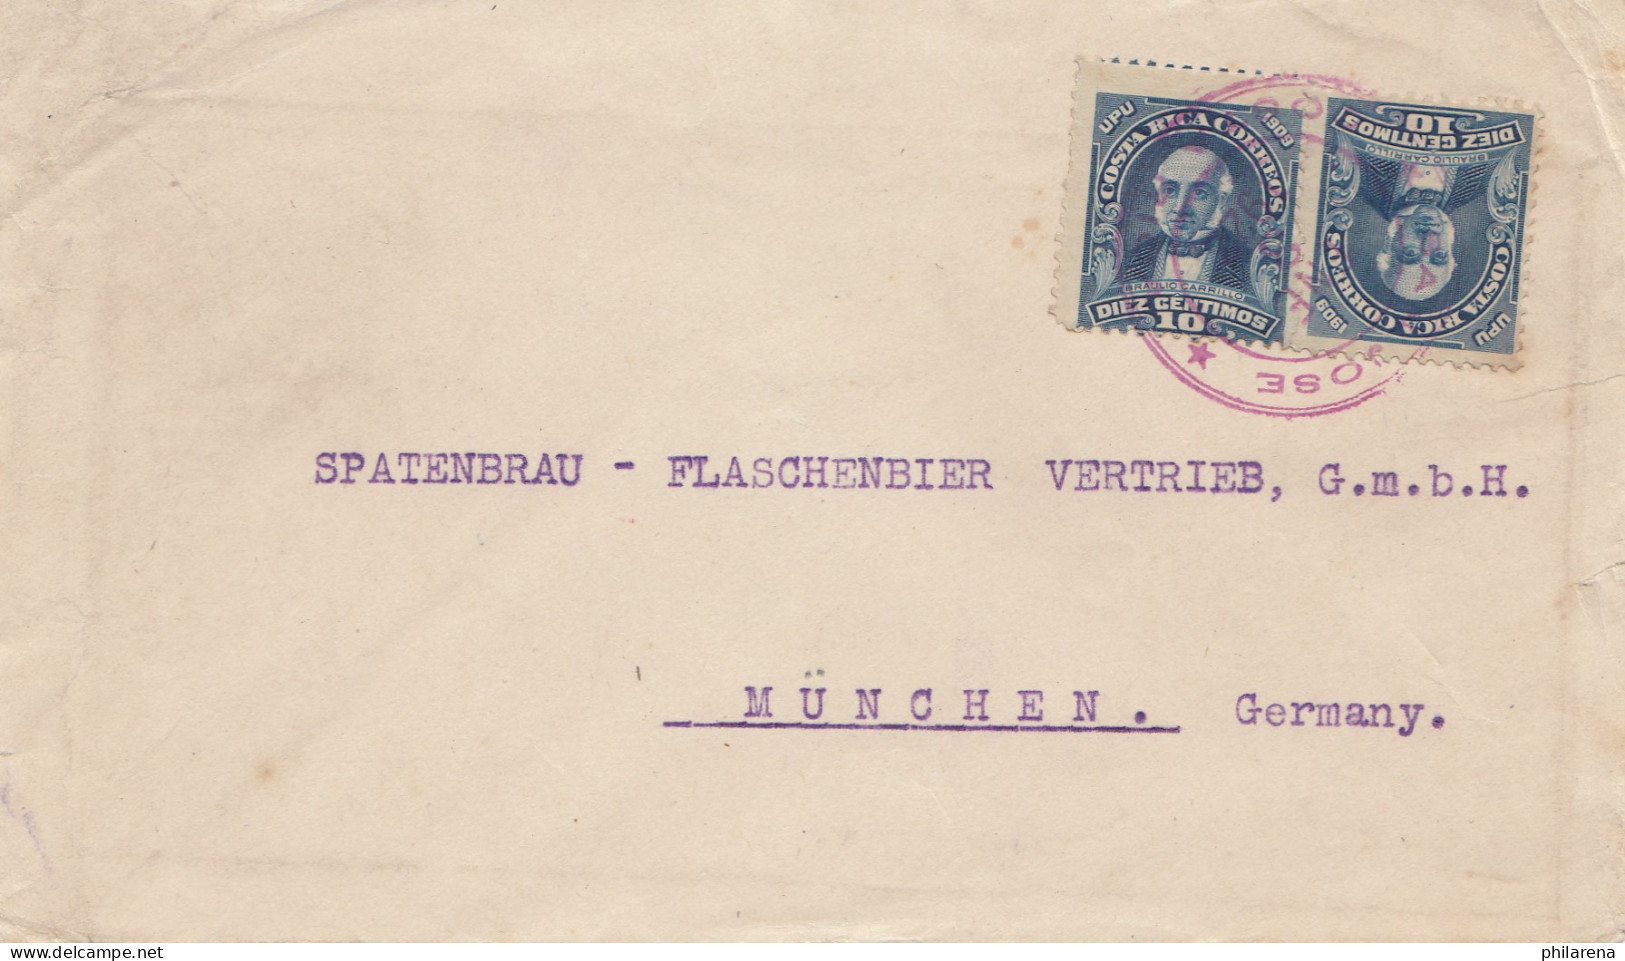 Costa Rica: 1922: Letter To Spatenbräu - Flaschenbier München - Beer Brewery - Costa Rica